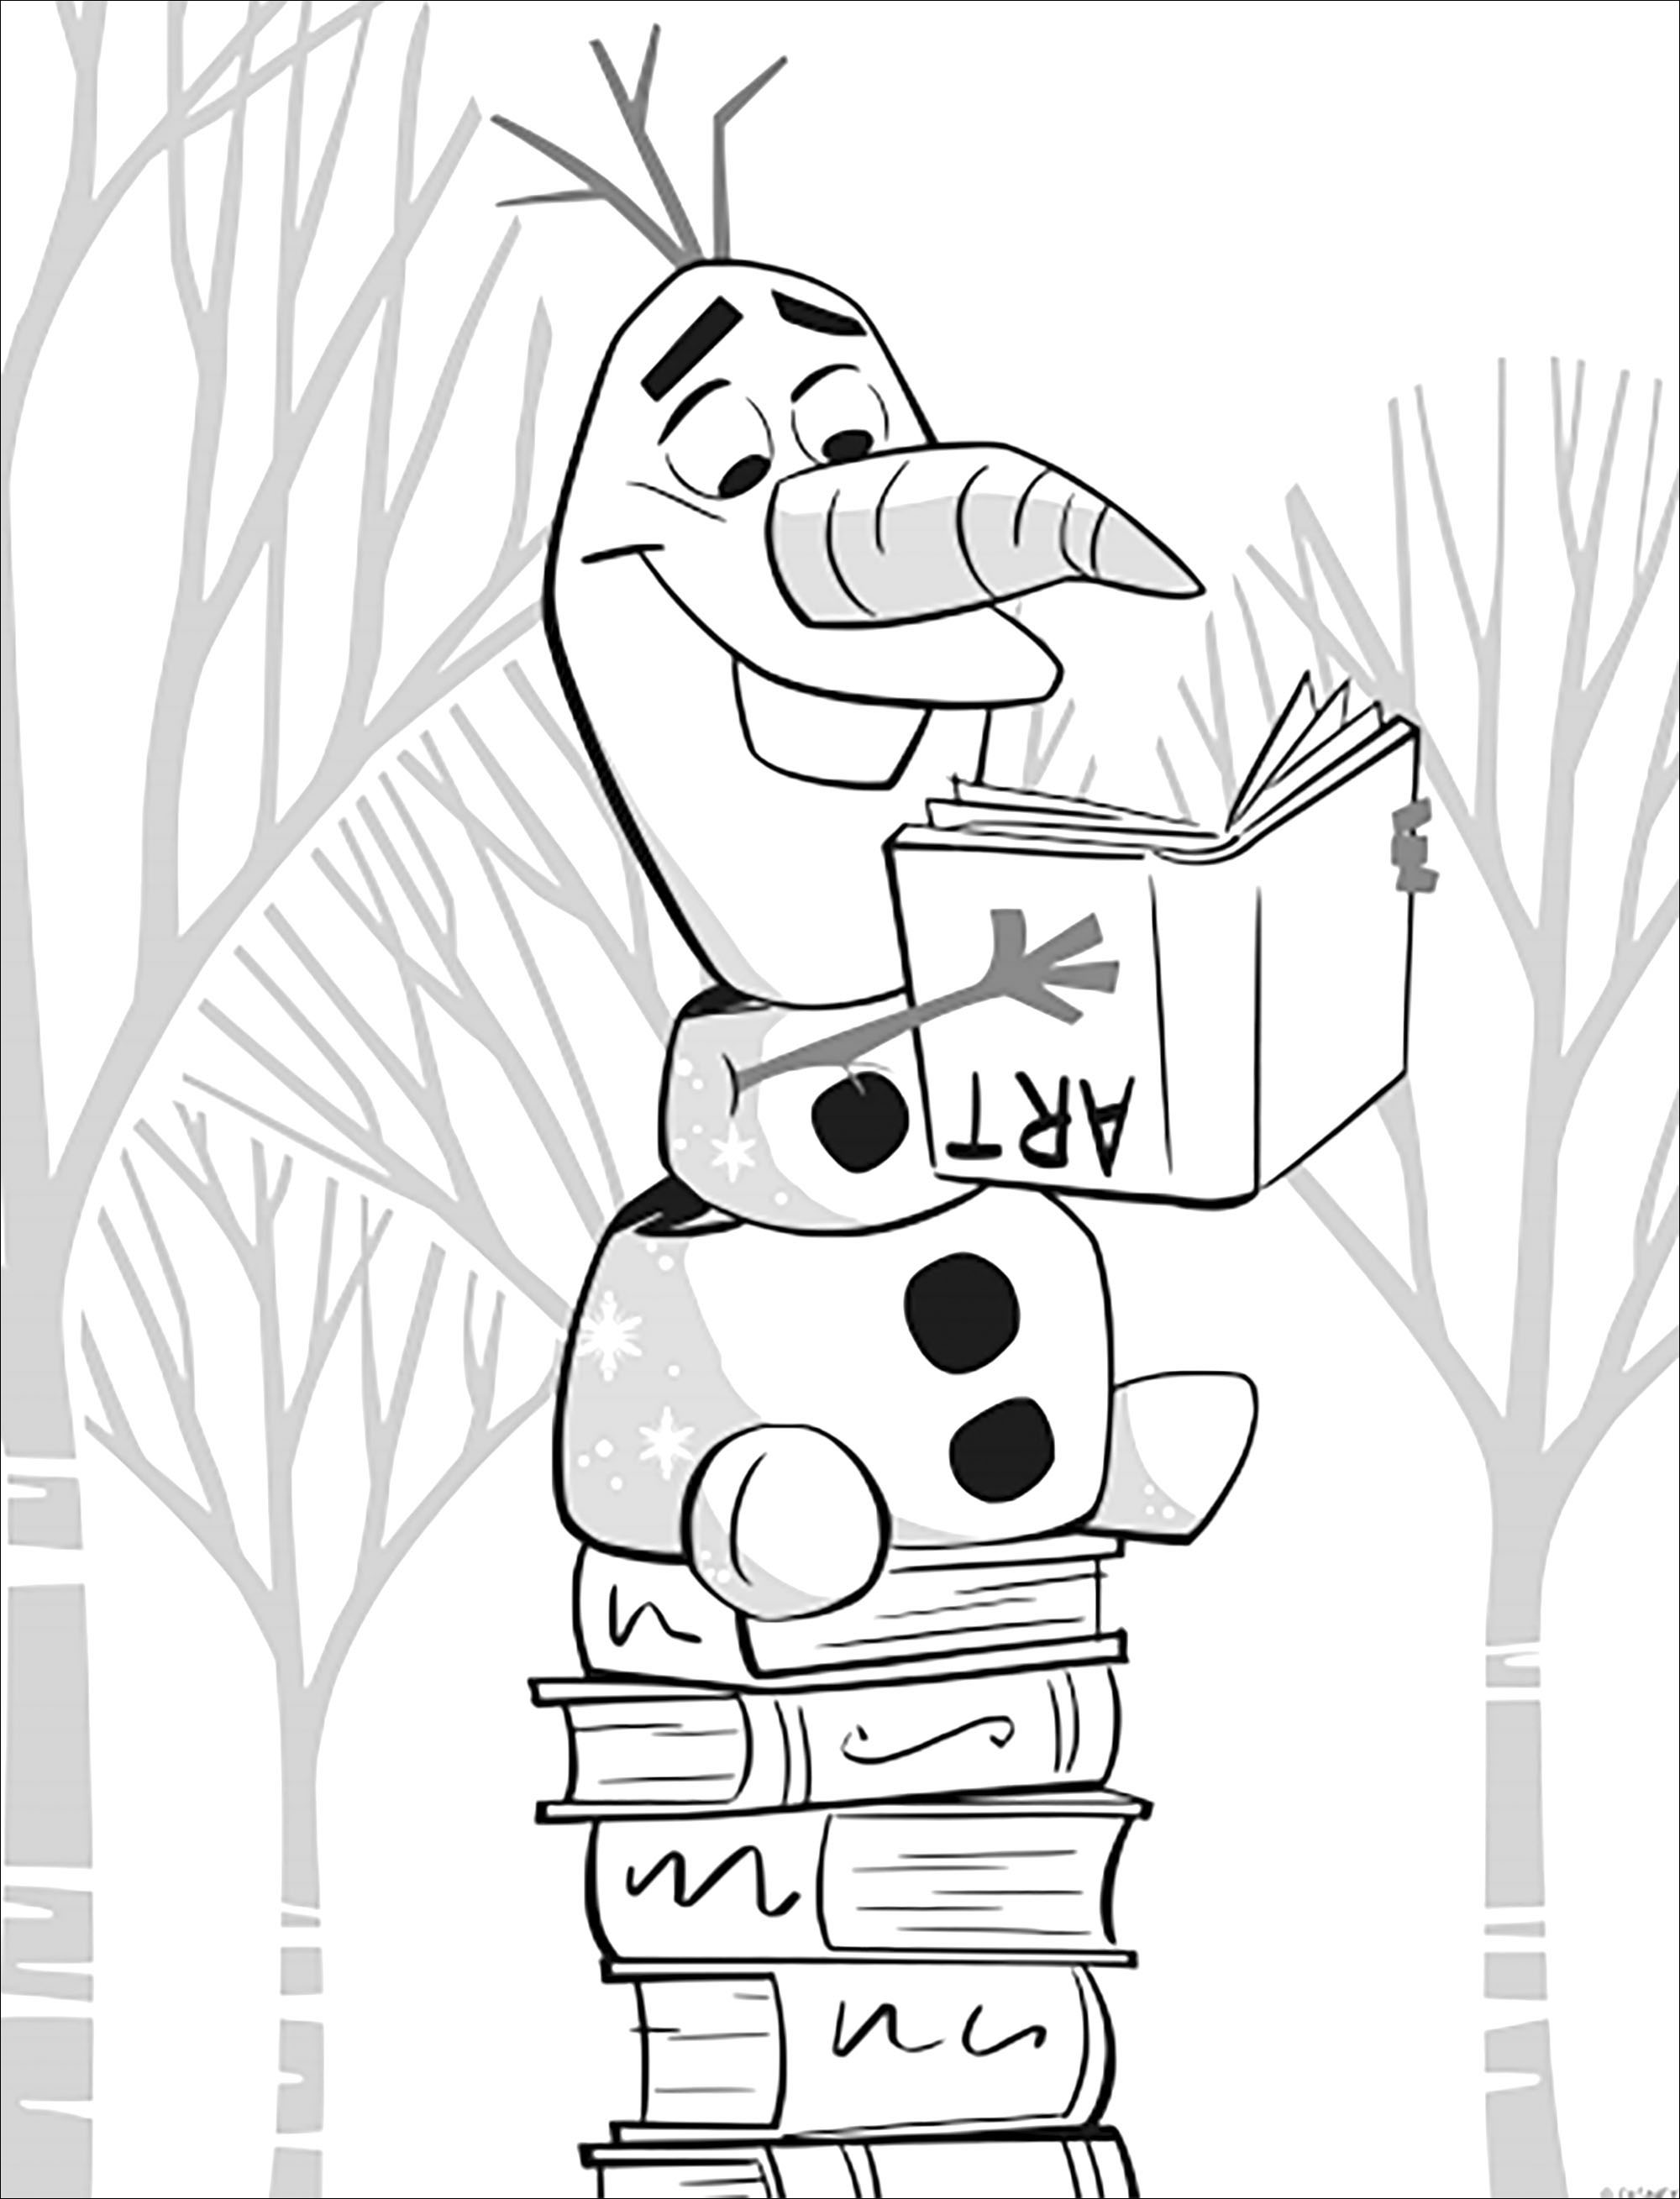 E aqui está Olaf novamente, tão engraçado como sempre em Disney's Frozen: O Reino do Gelo 2 (versão sem texto)